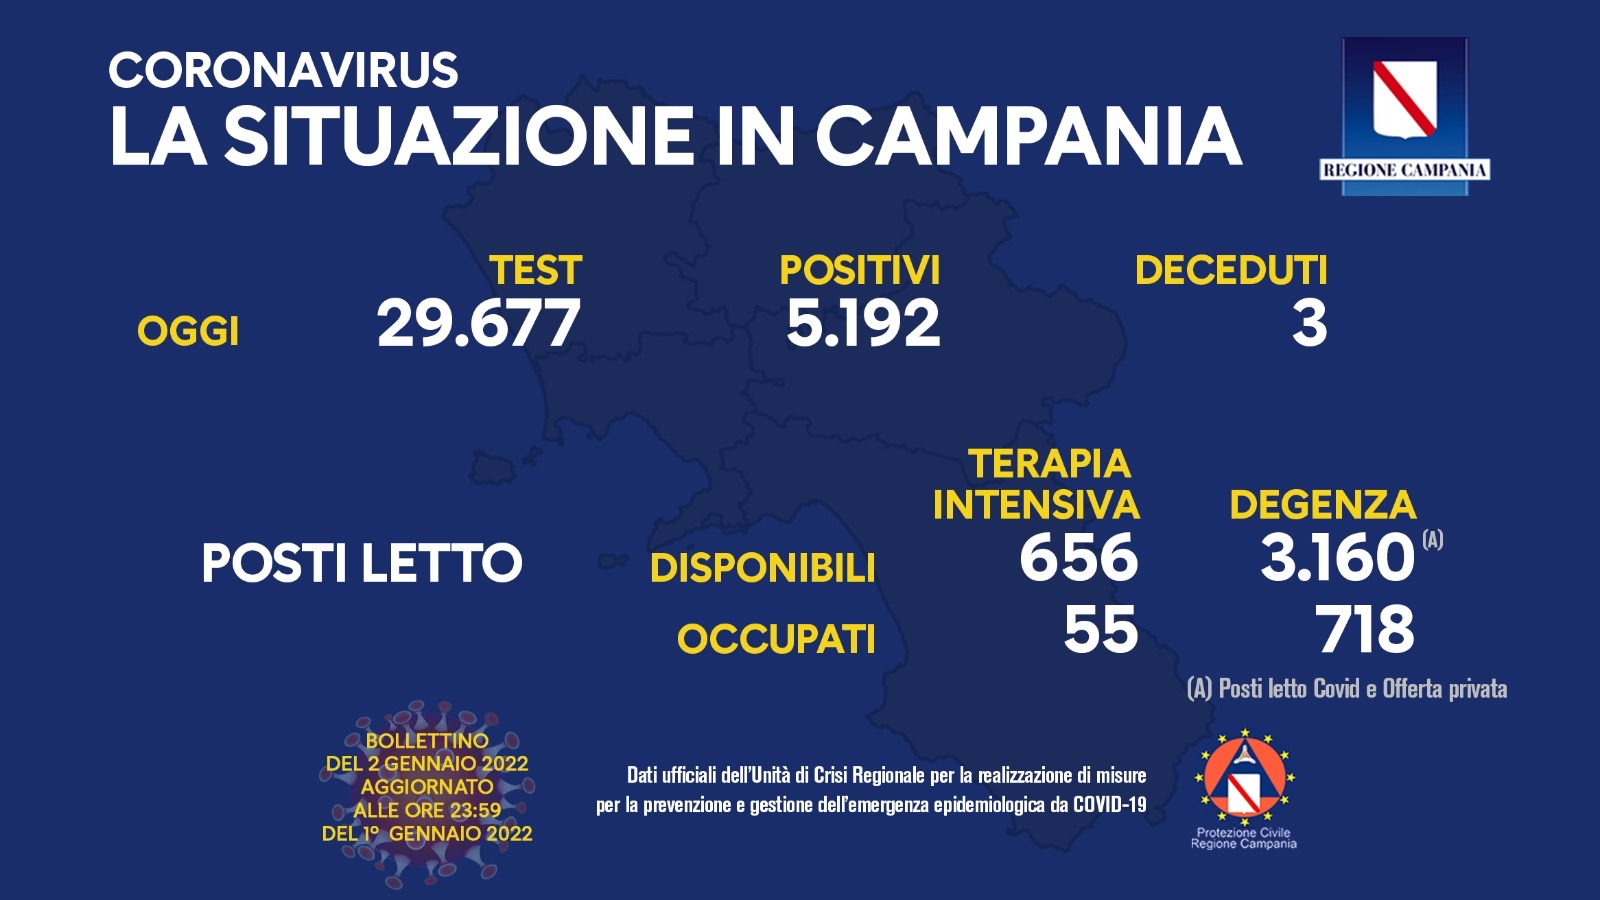 Regione Campania: Coronavirus, Unità di Crisi, Bollettino, 5192 casi positivi, 3 decessi